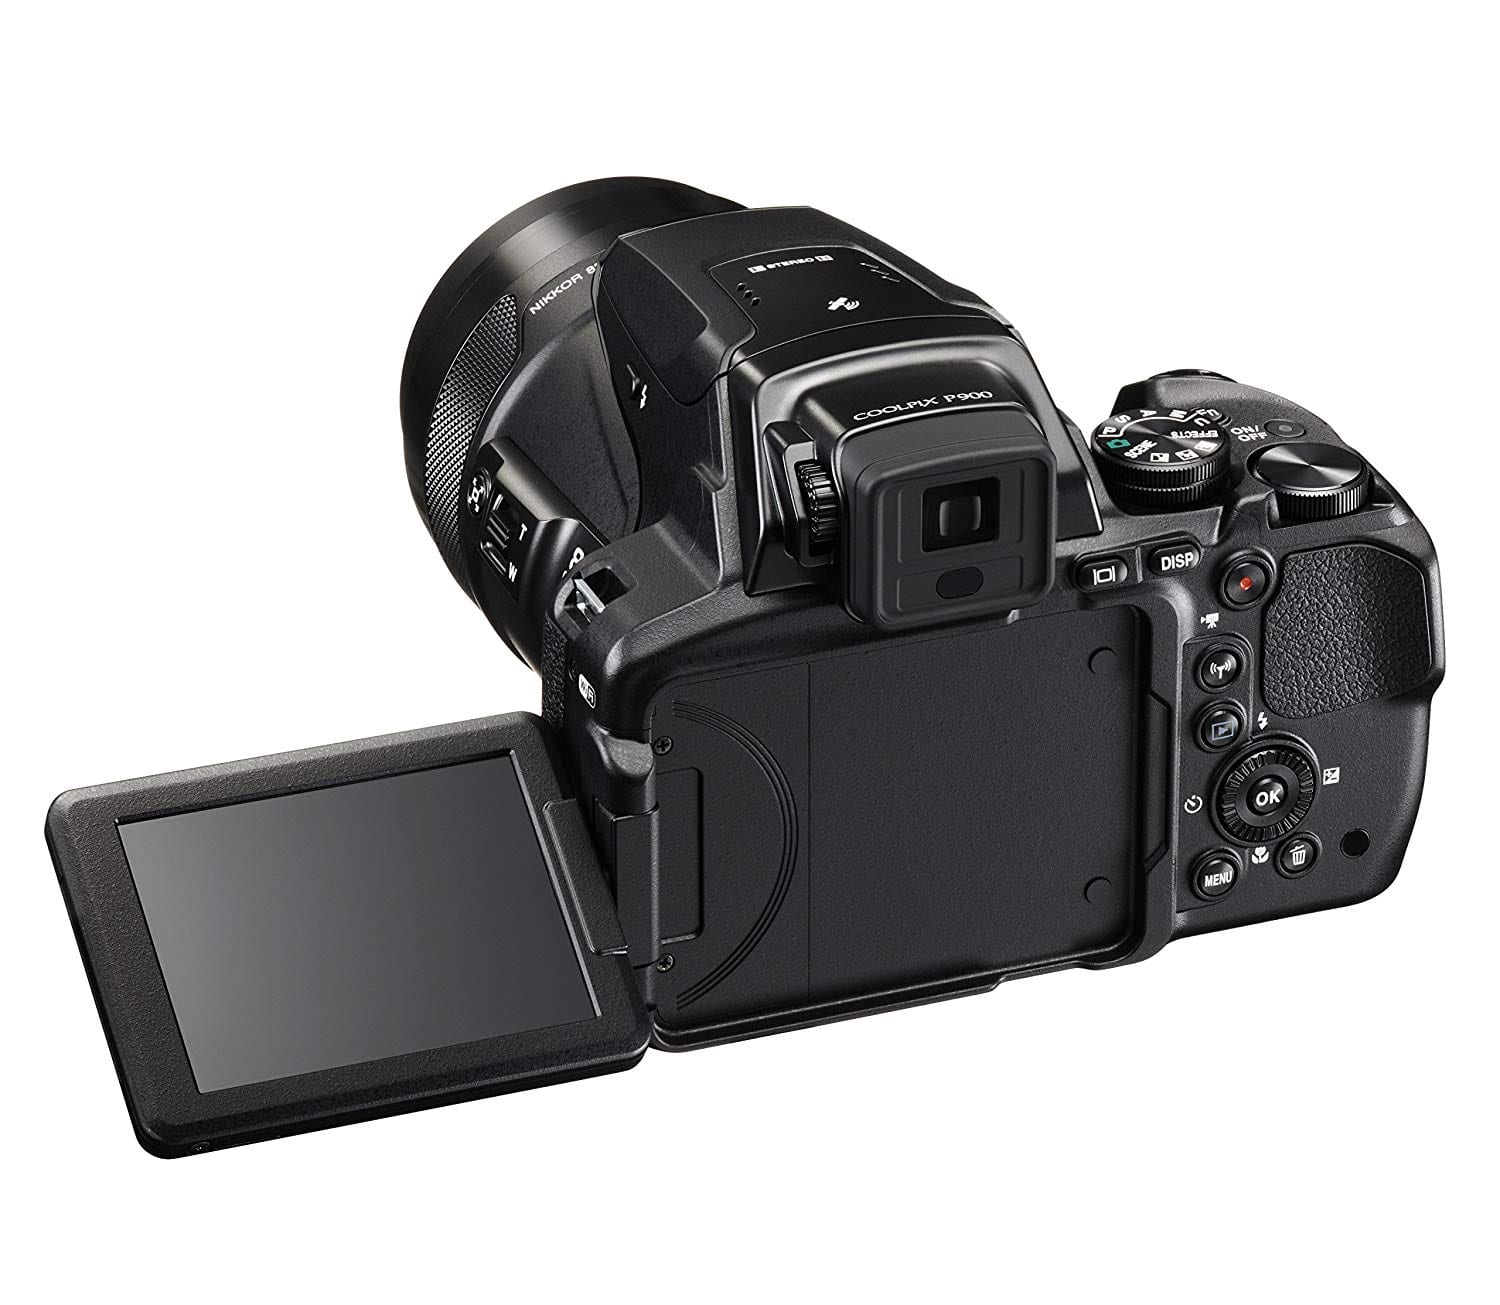 Meilleur appareil photo bridge N°3 : Le Nikon P900 offre un écran inclinable